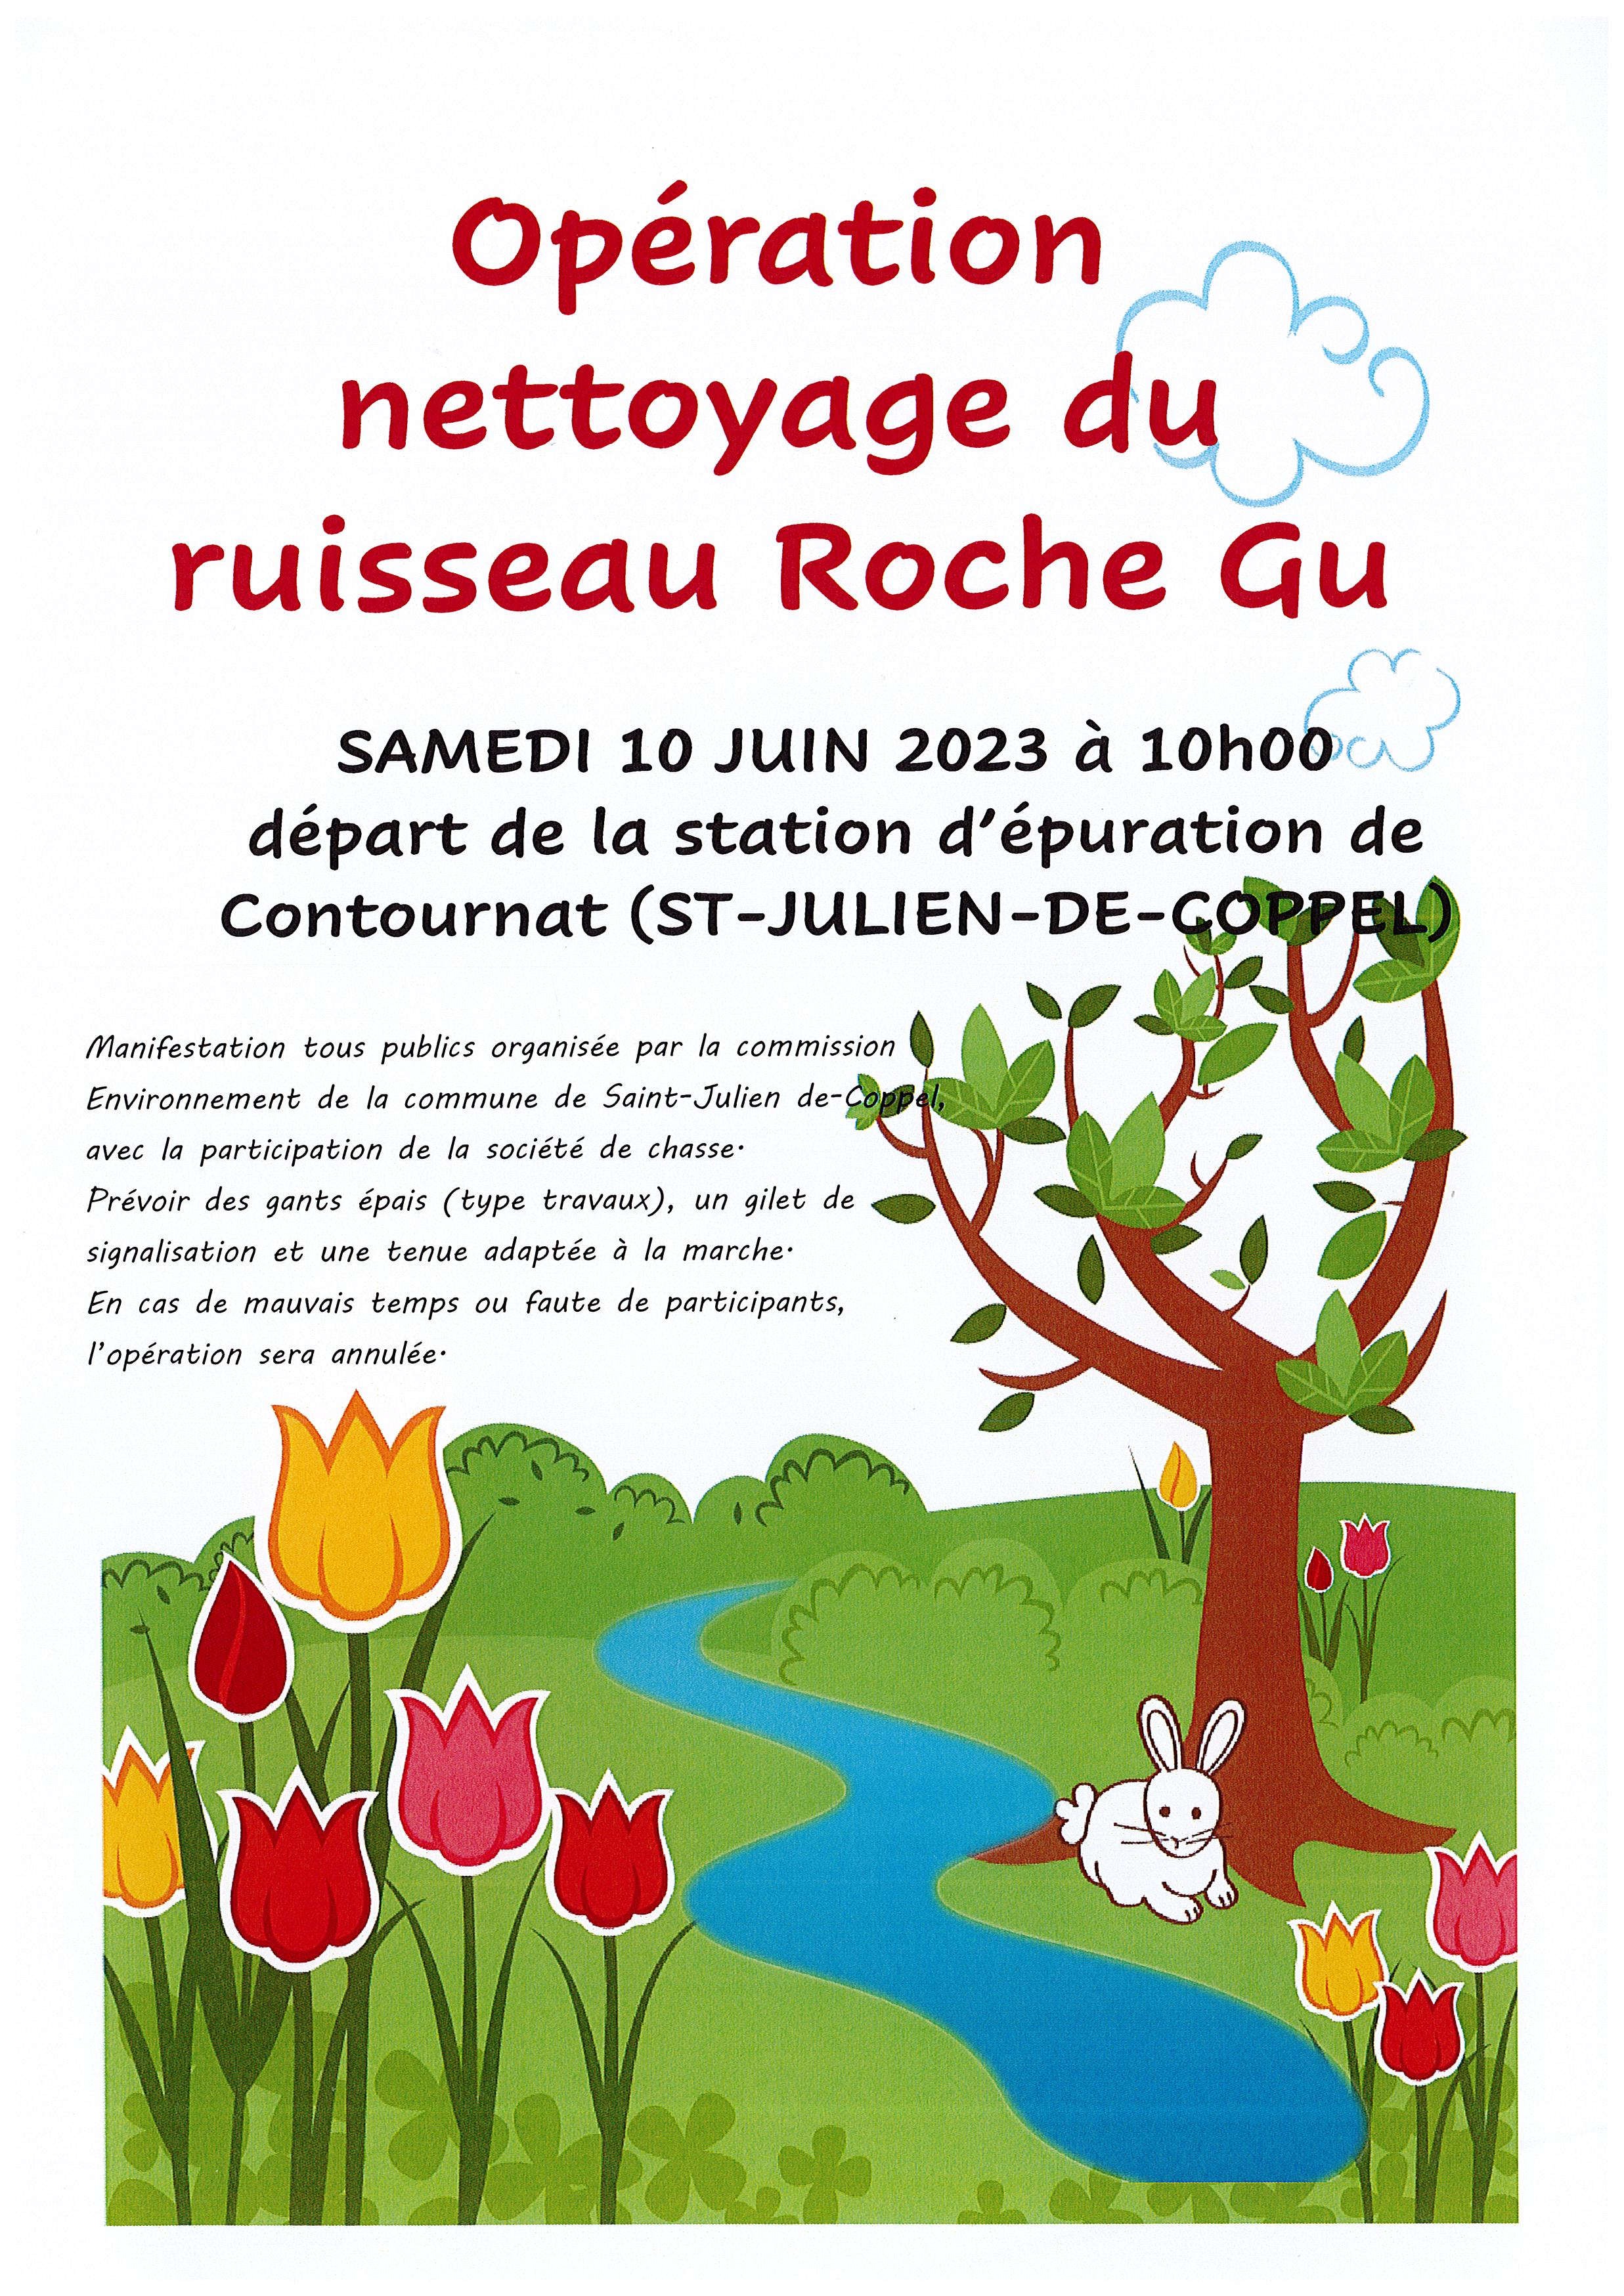 La commission Environnement de la commune de Saint-Julien-de-Coppel organise une opération de nettoyage du ruisseau Roche Gu à Contournat. Rendez-vous samedi 10 juin 2023 à 10h00 à la station d’épuration […]